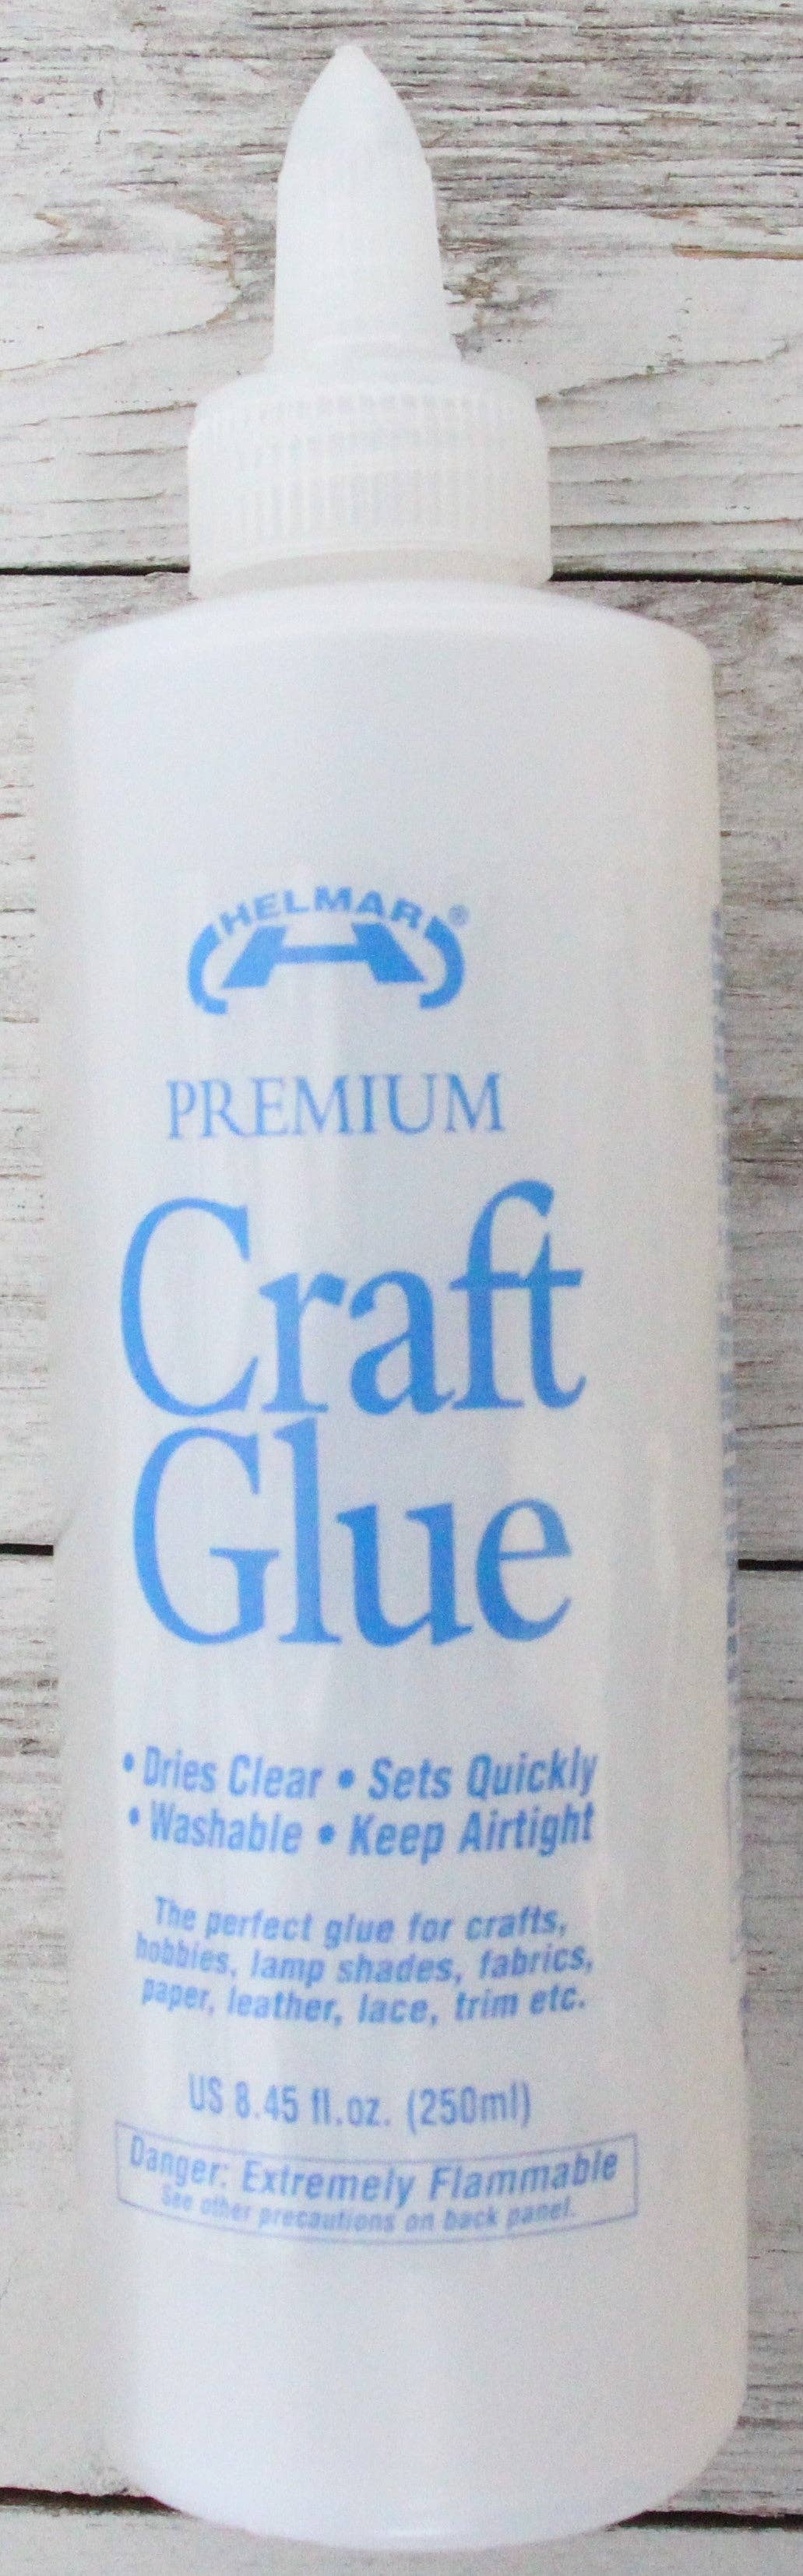 Premium Crafts Glue: Premium Crafts Glue 125 ml